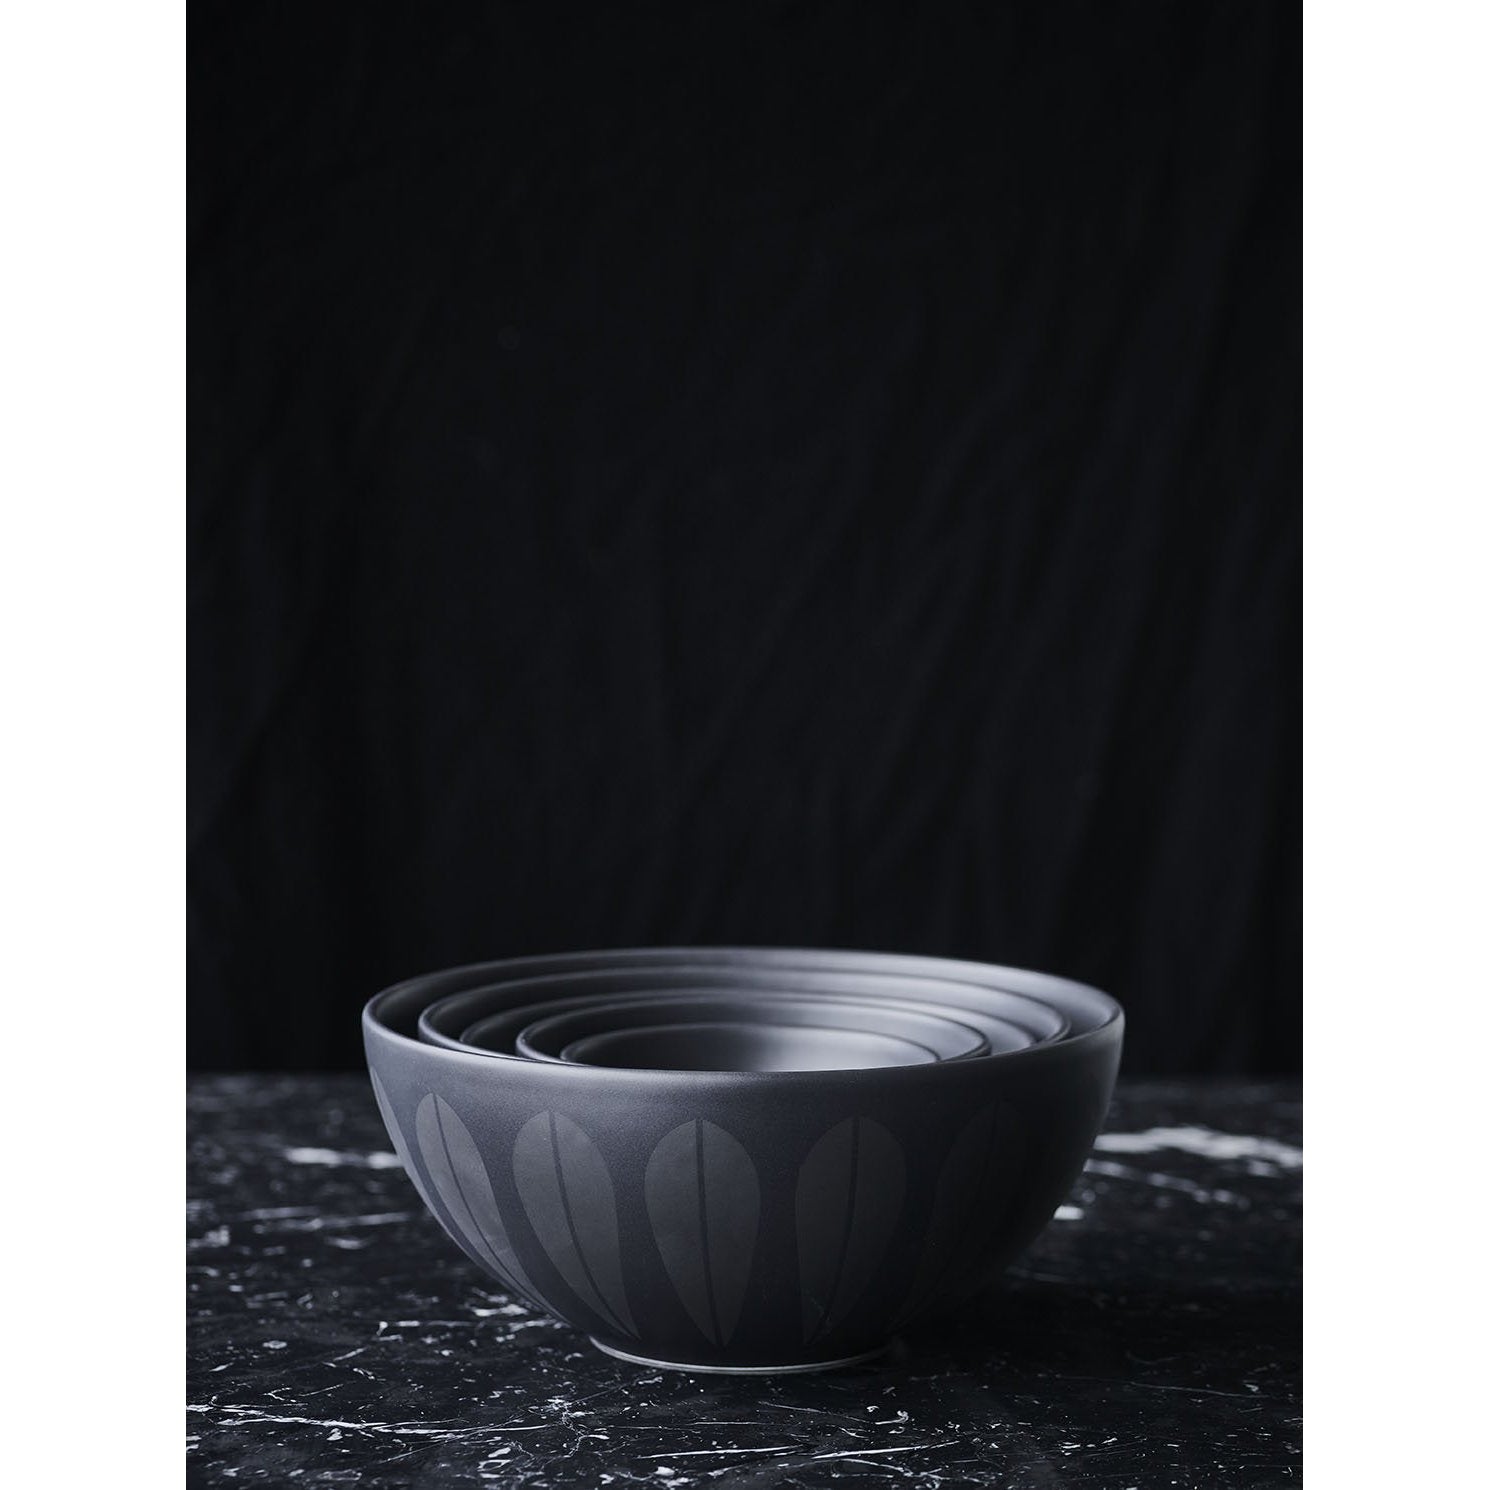 Lucie Kaas Arne Clausen Bowl Black, 12 cm